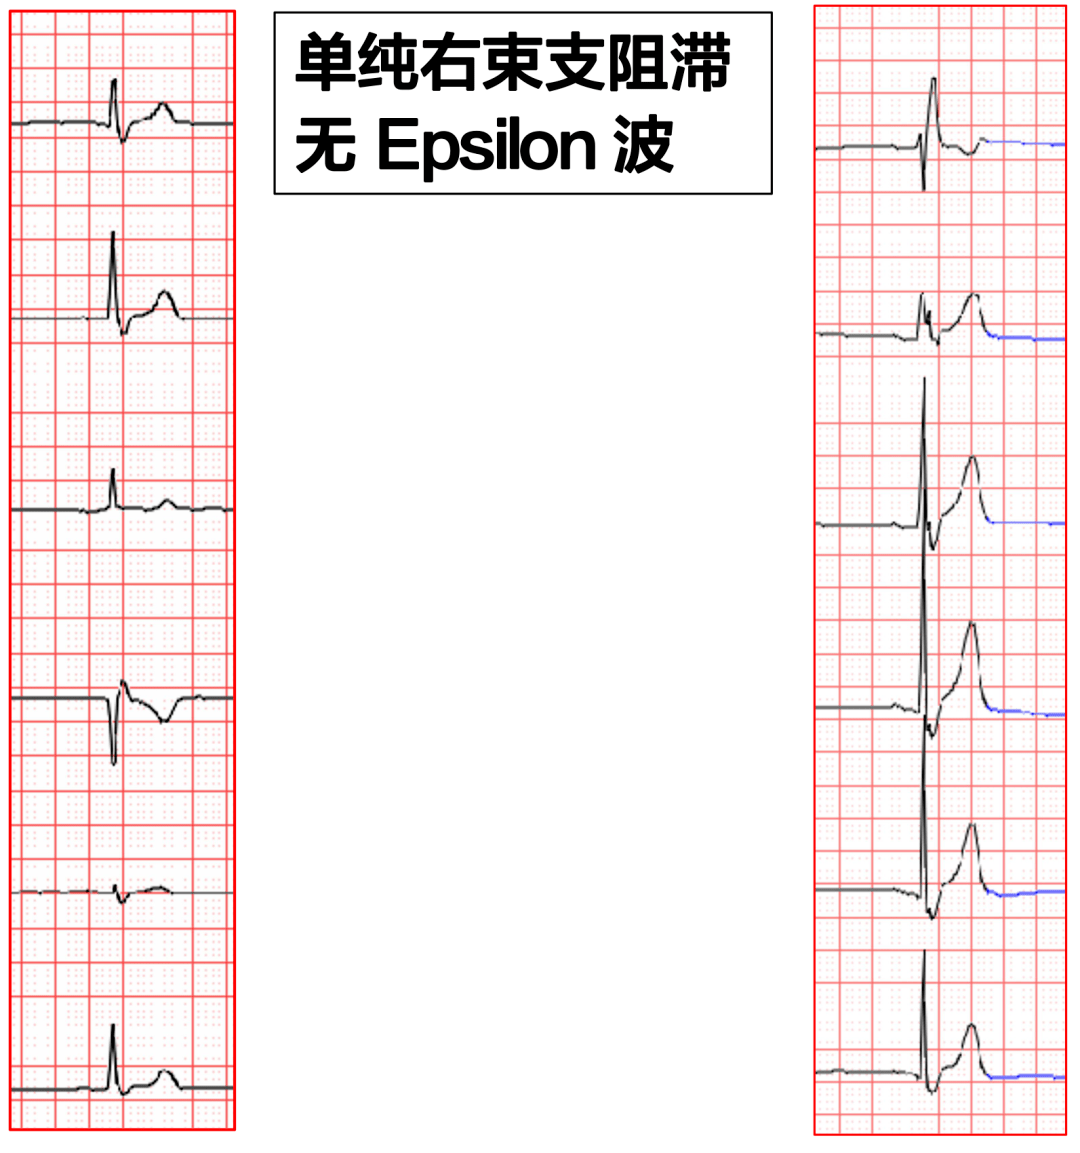 Epsilon 波的识别及临床意义